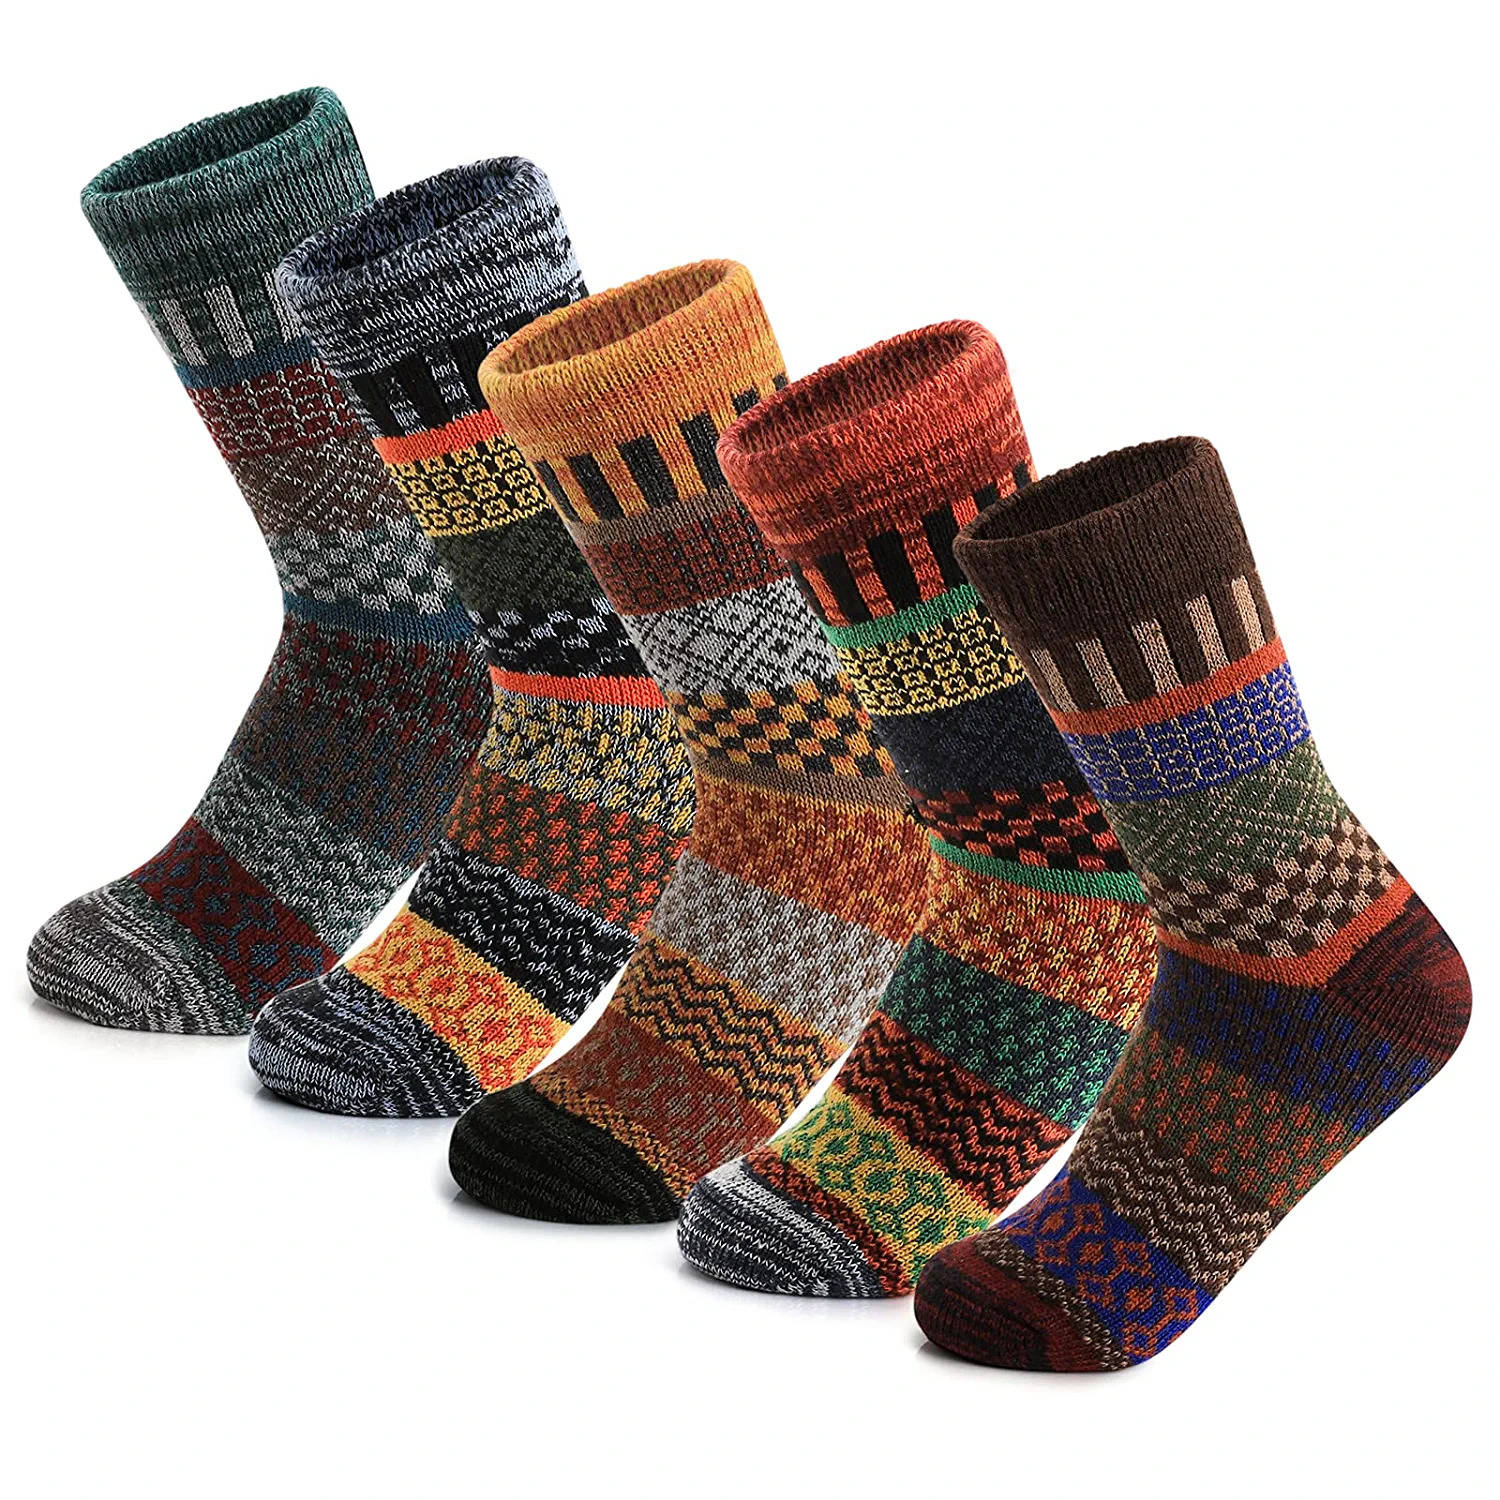 Woollen socks for women: 6 Best Winter Socks for Women to Stay Warm - The  Economic Times